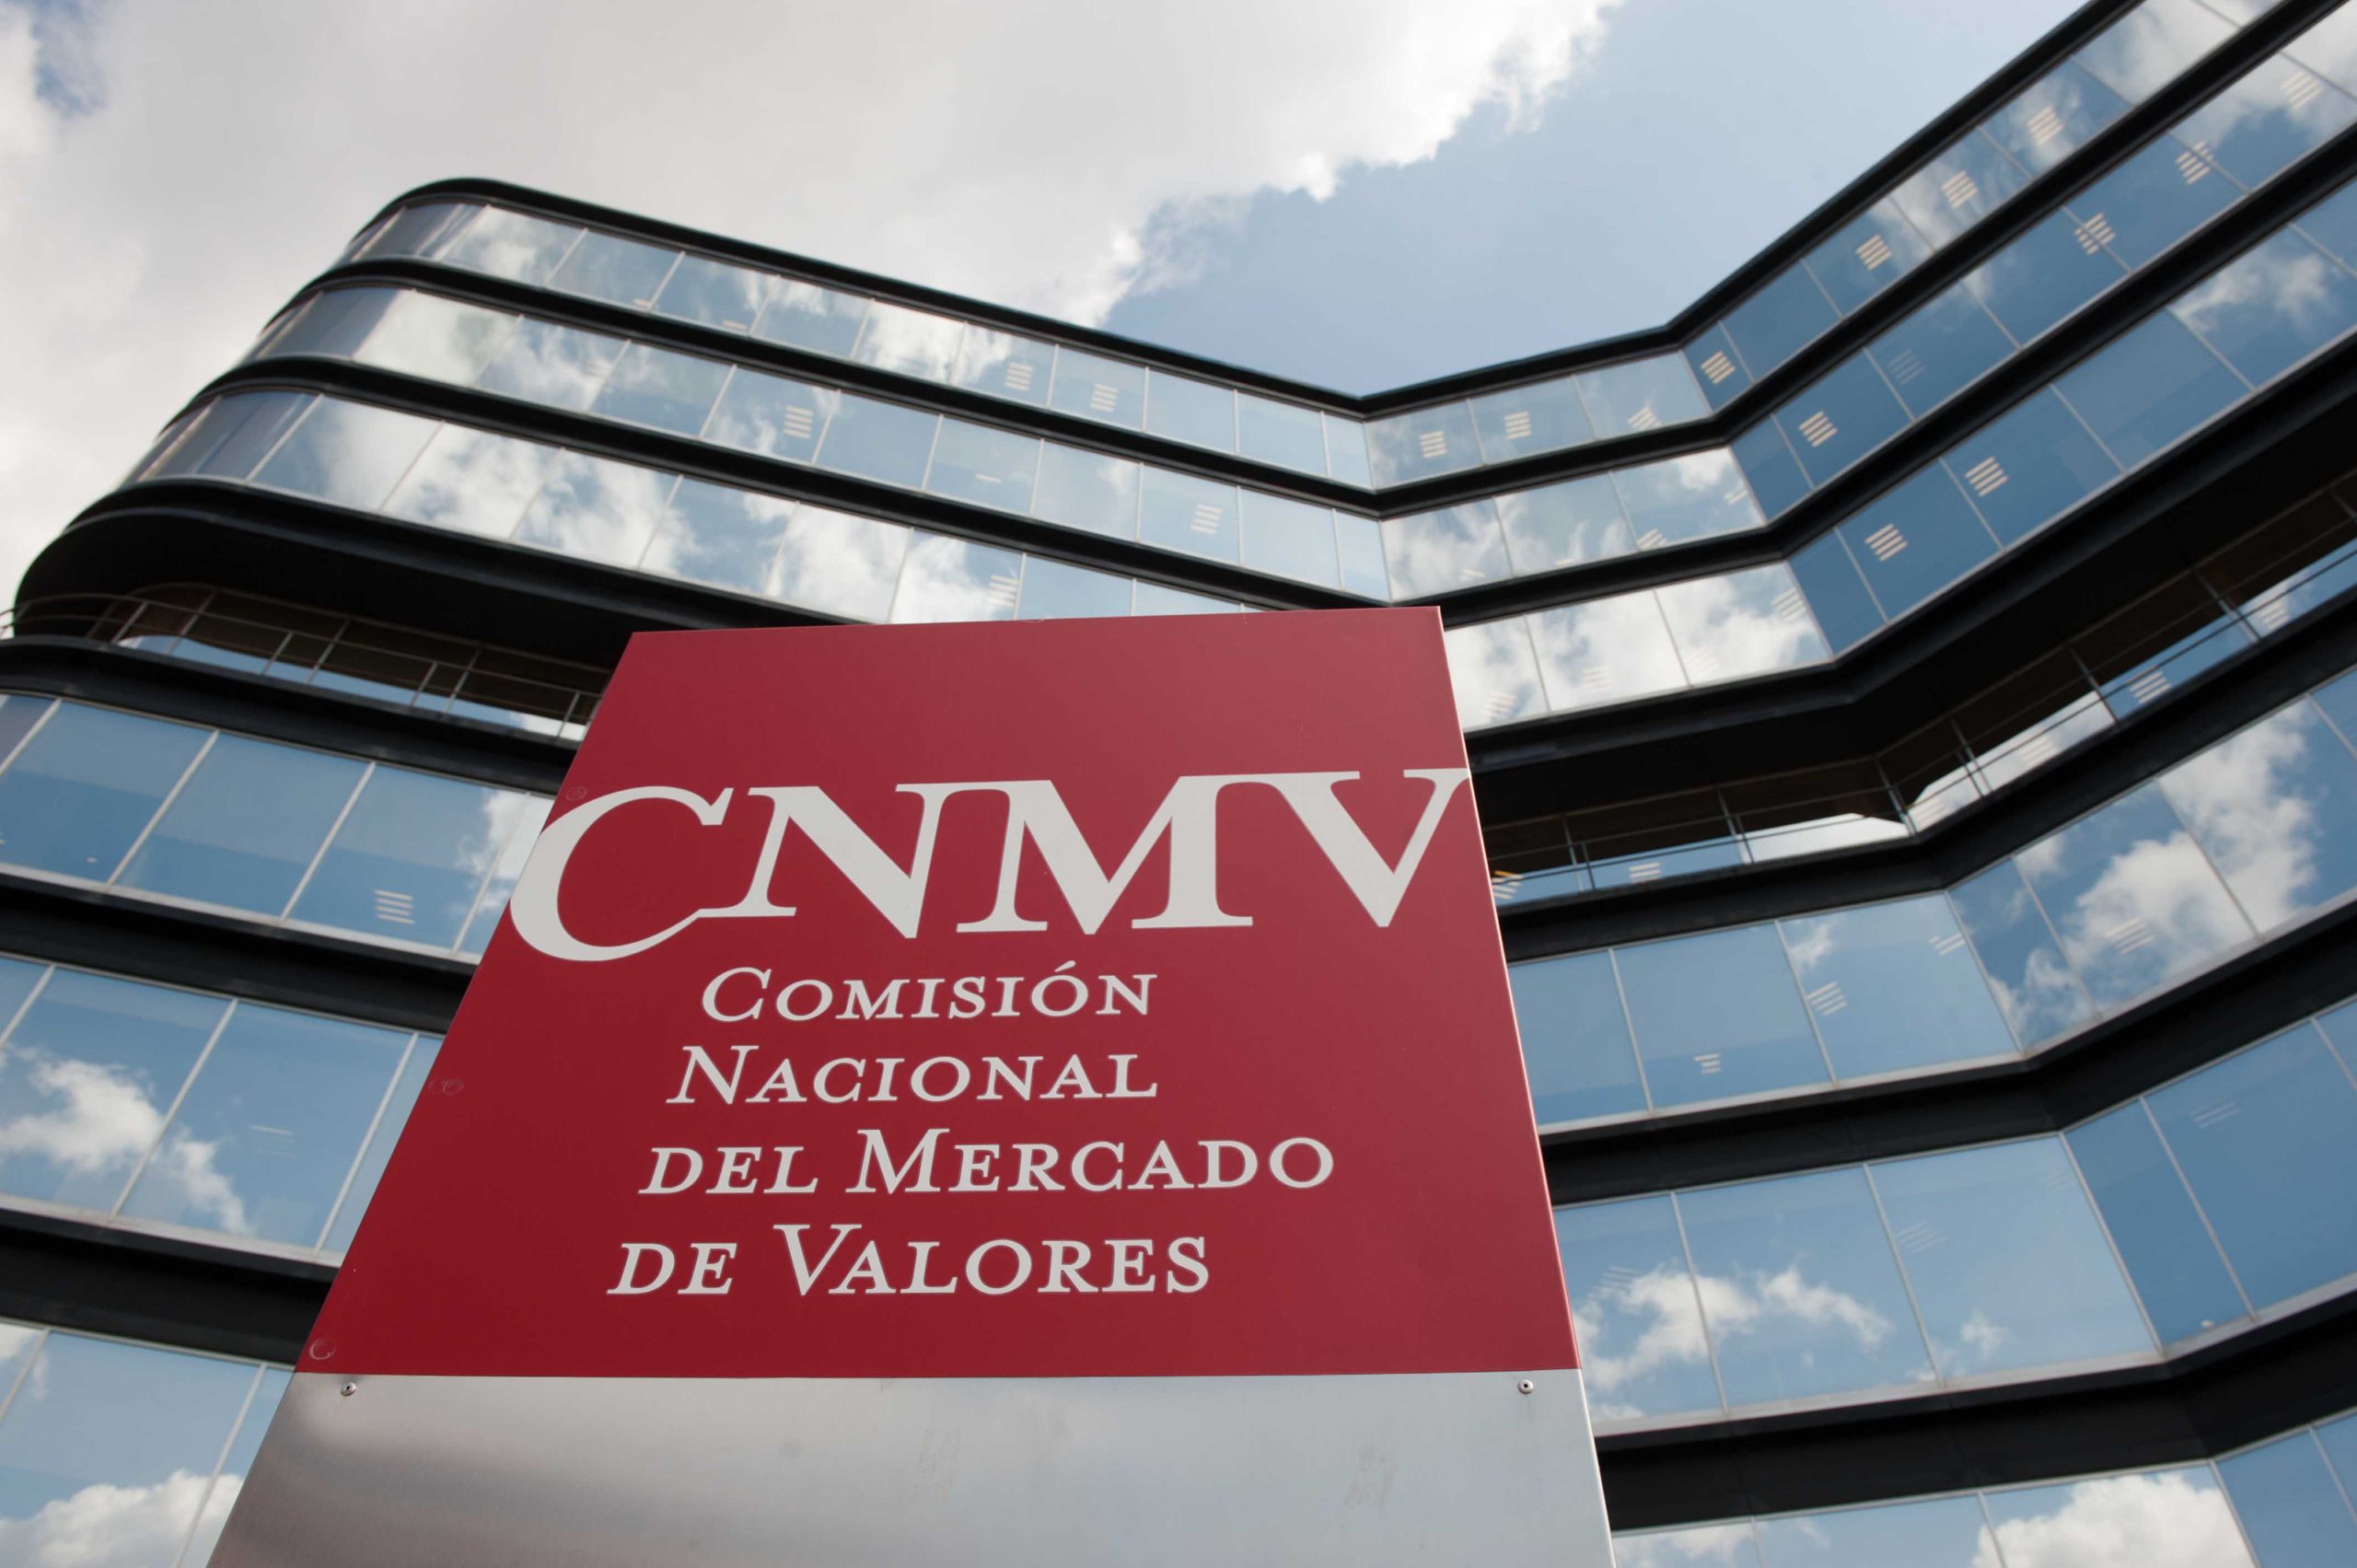 الهيئة الوطنية لسوق الأوراق المالية في إسبانيا CNMV تحدد 14 كيانًا غير مسجل بينما تشدد إسبانيا الرقابة المالية